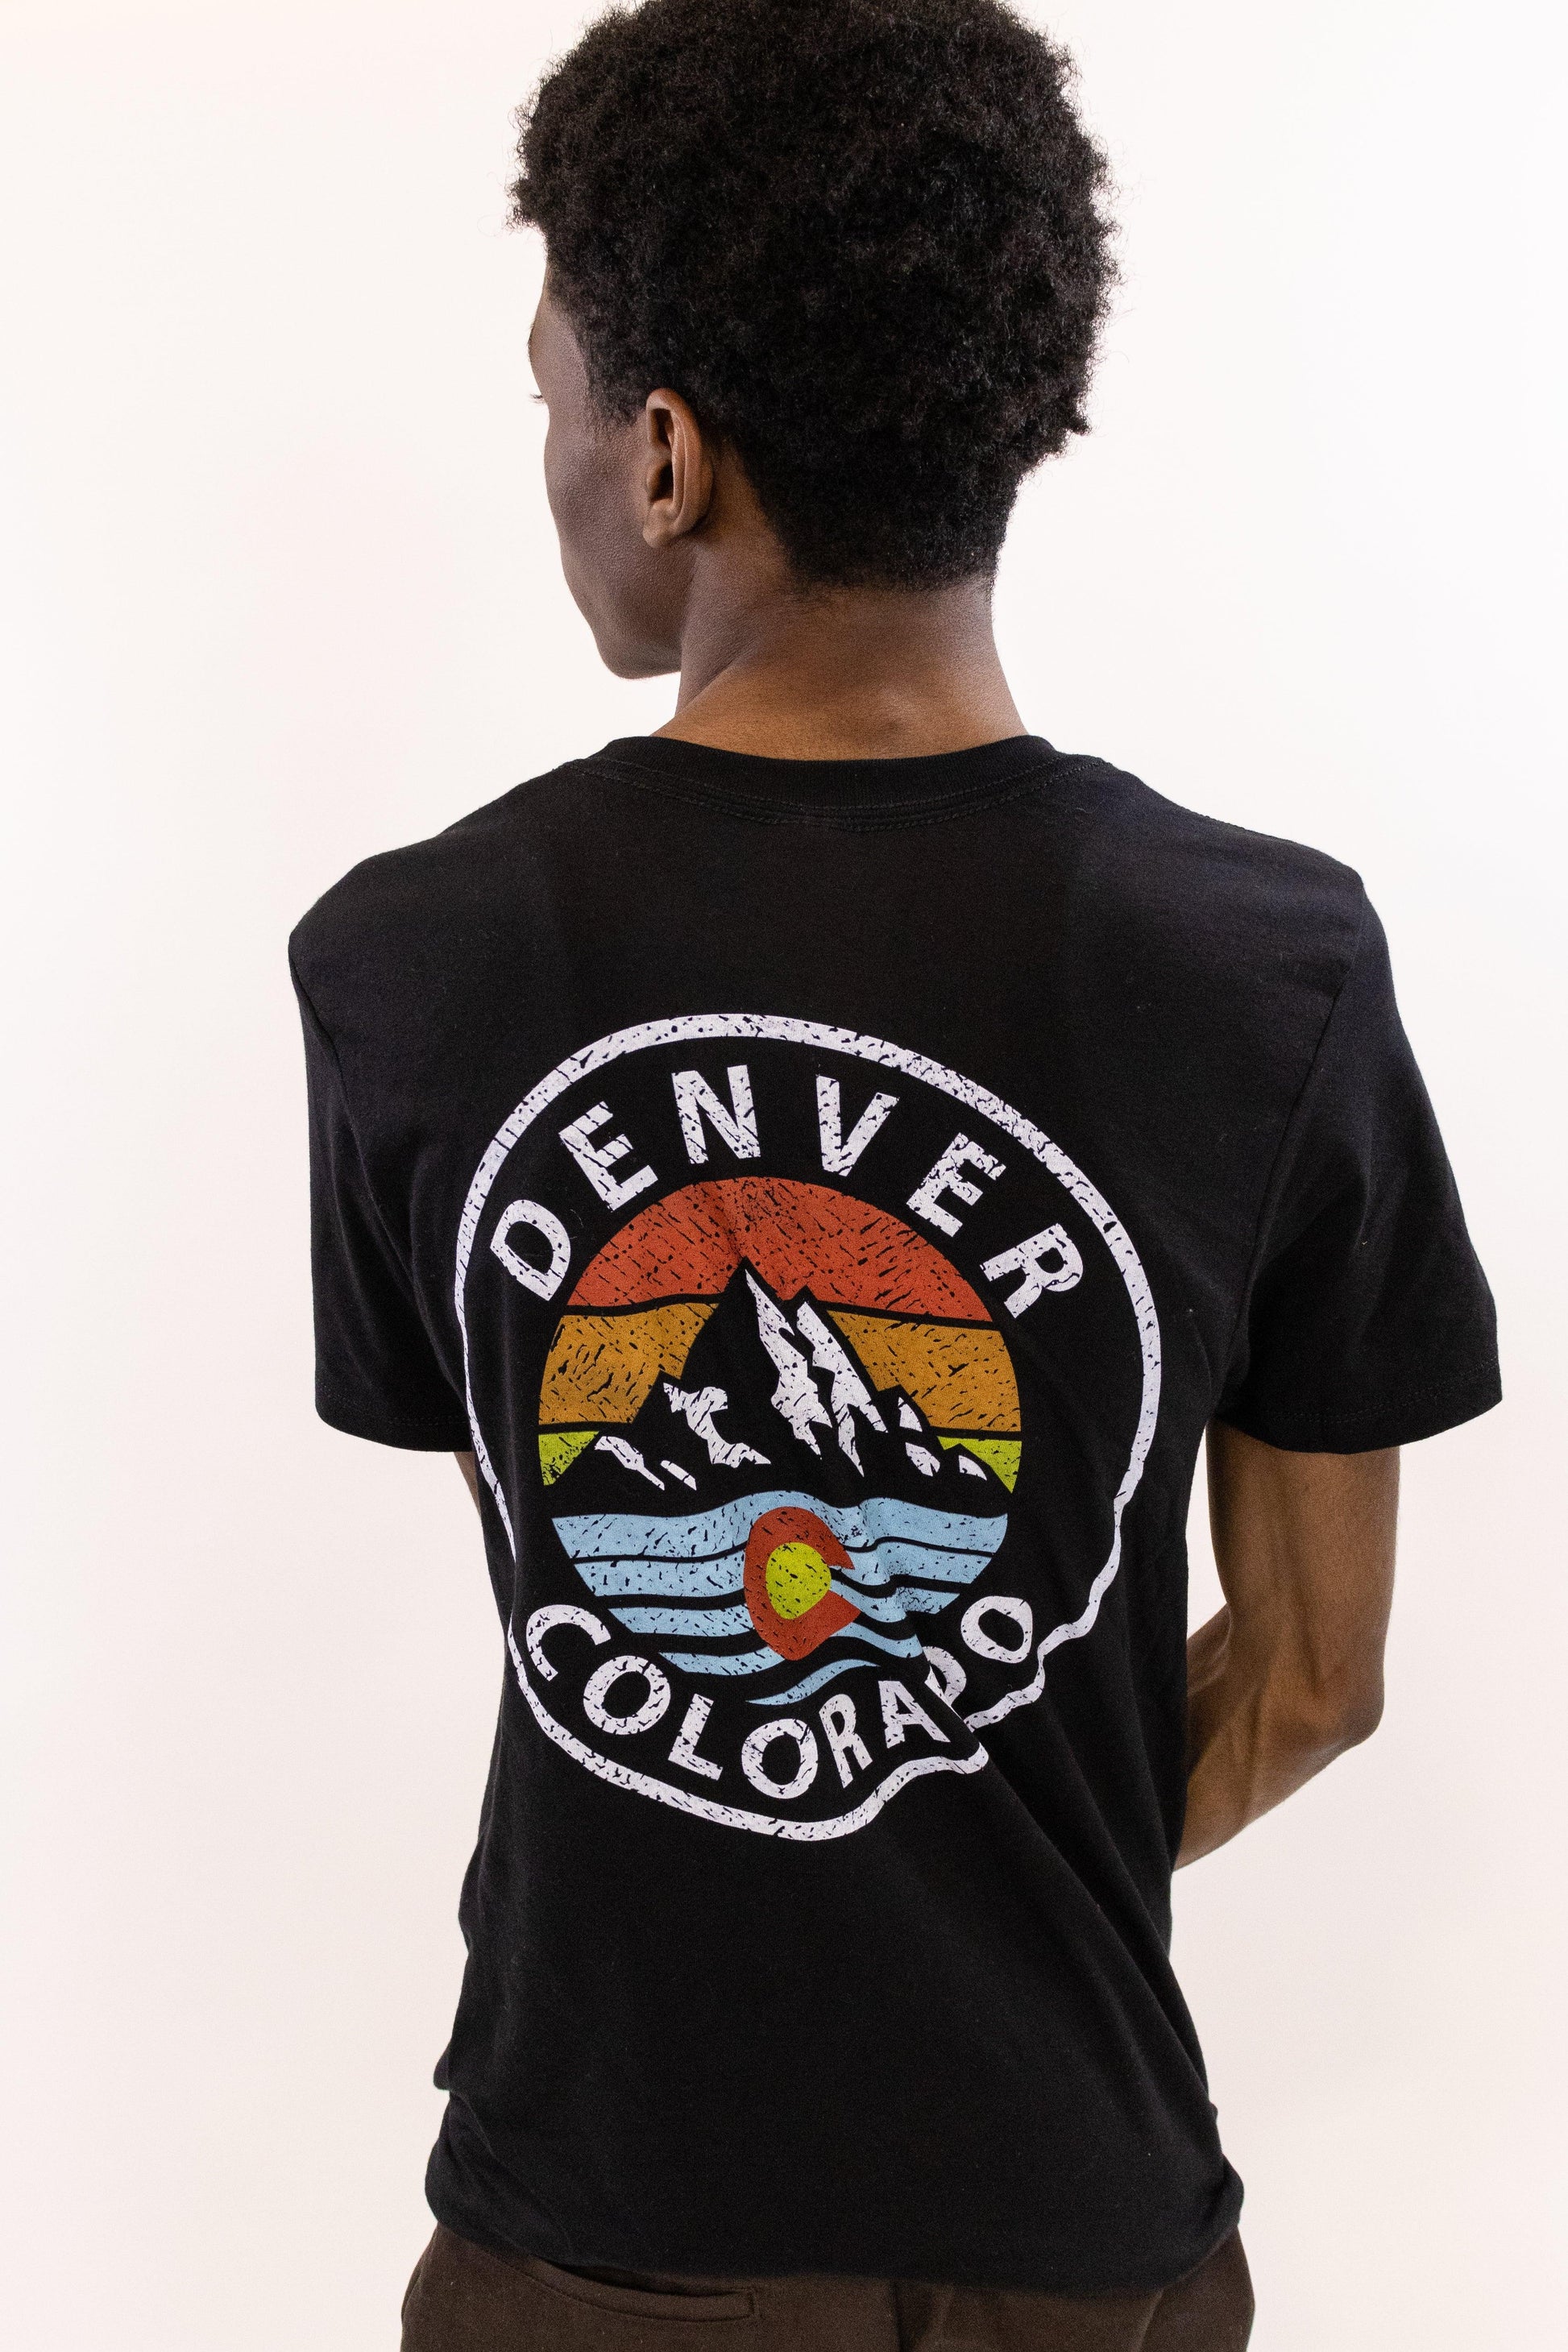 Retro Denver Colorado Tee - Love From USA